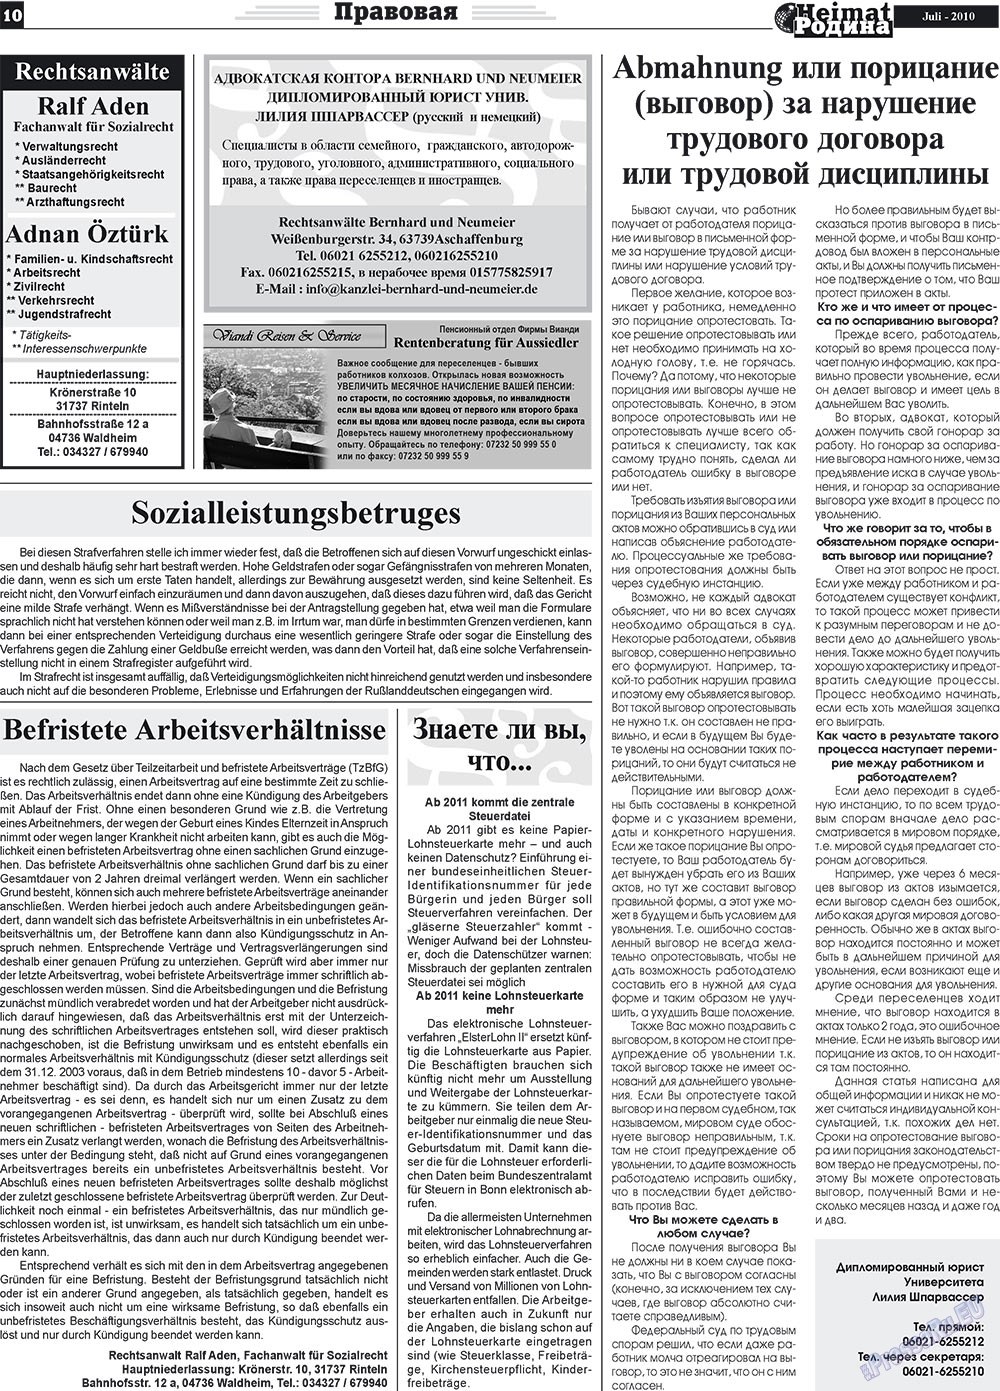 Heimat-Родина (газета). 2010 год, номер 7, стр. 10